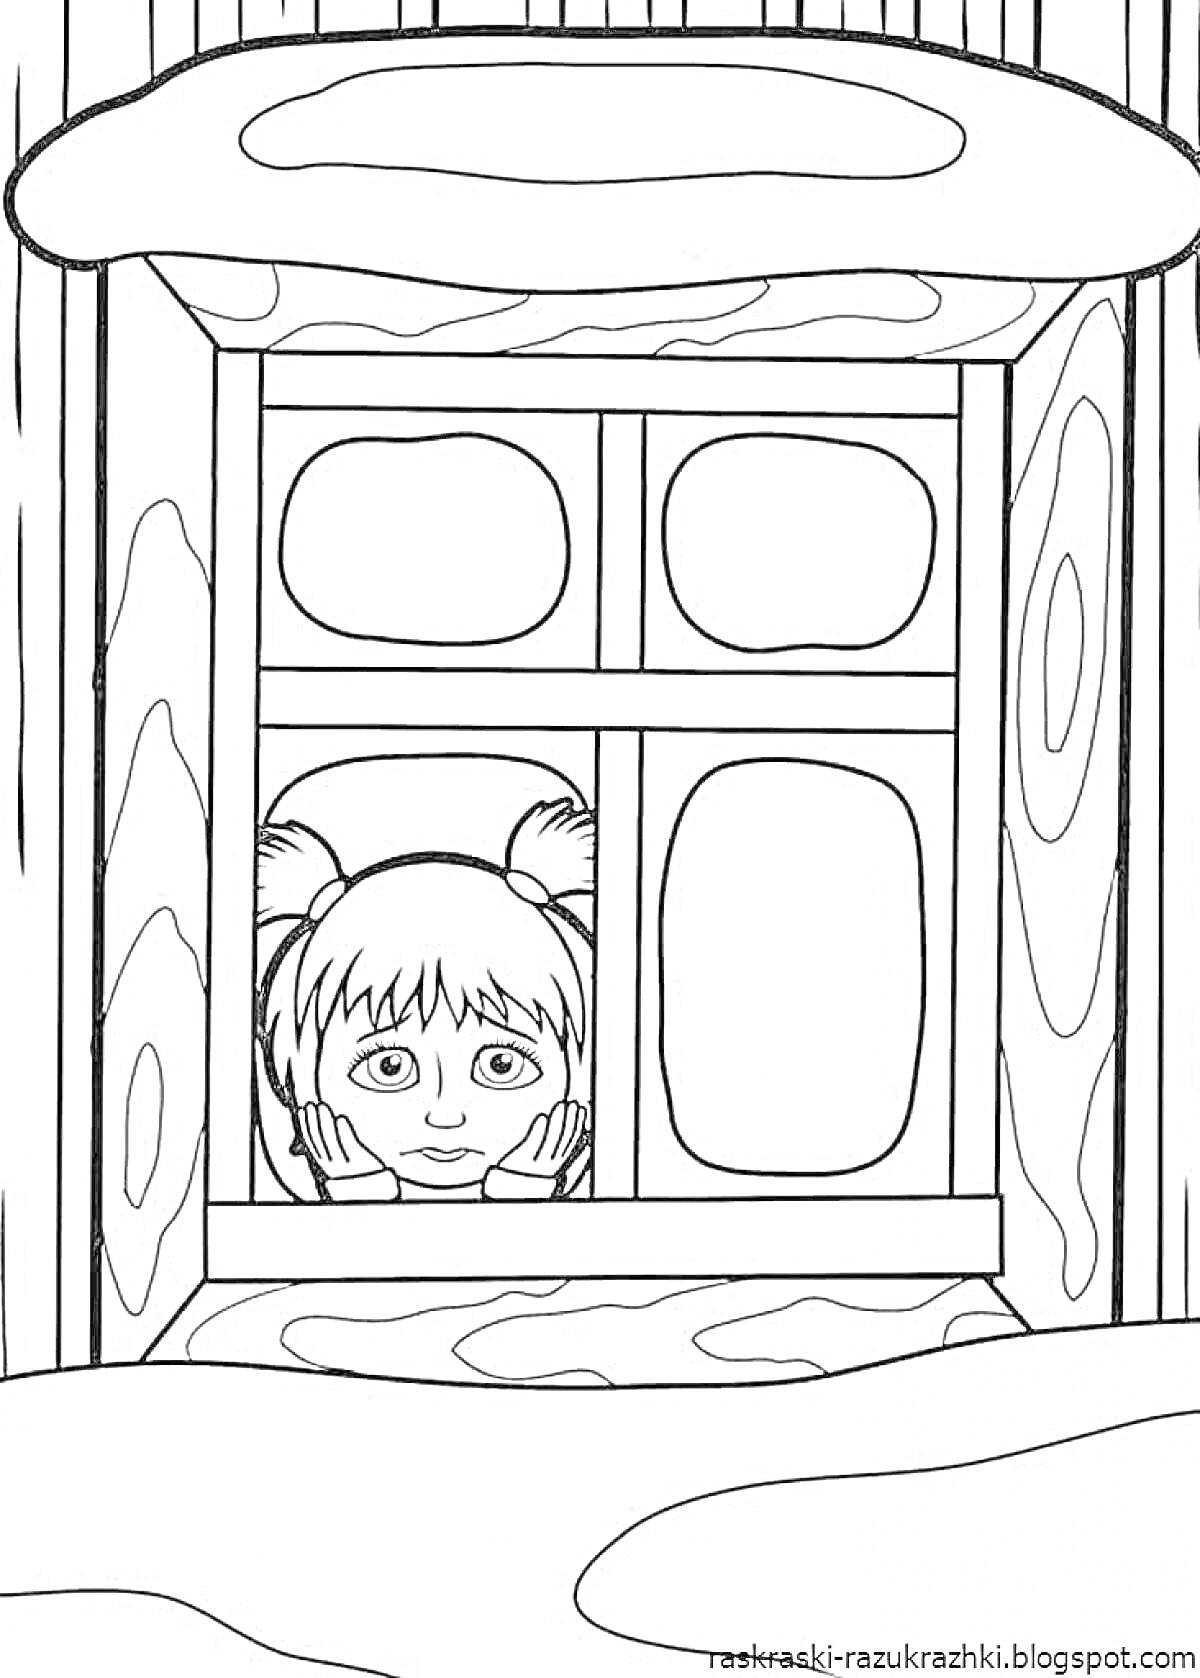 Раскраска Девочка с хвостиками смотрит в окно деревянного дома зимой